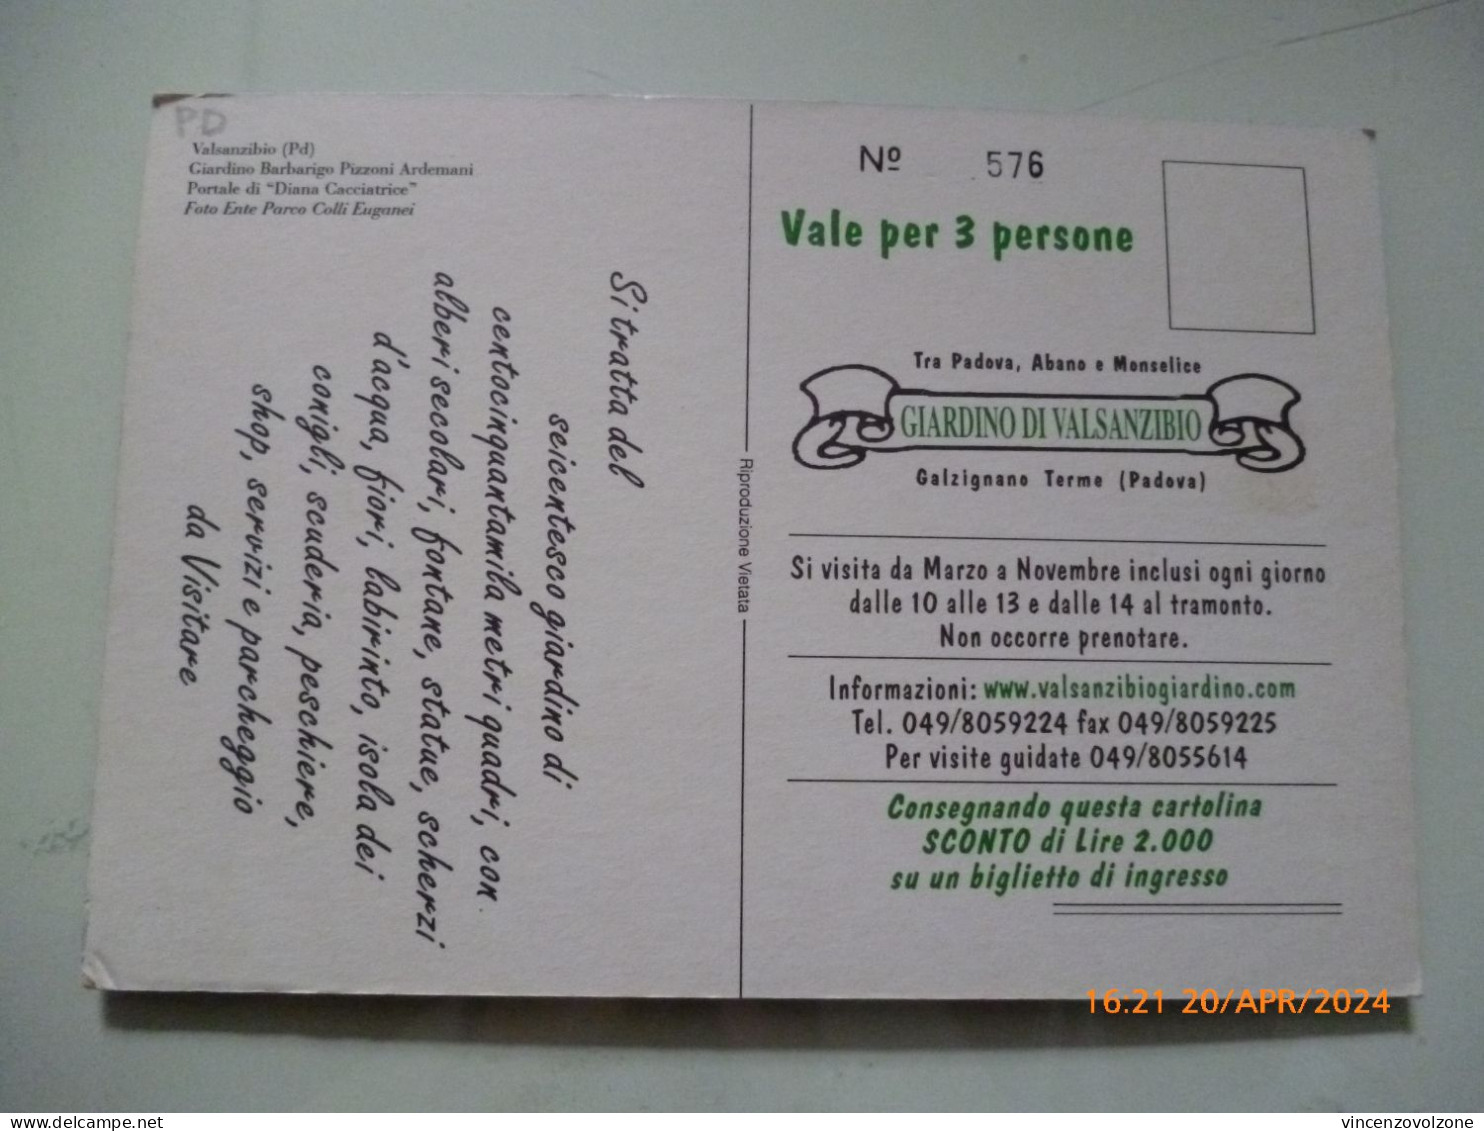 Cartolina "GIARDINO DI VALSANZIBIO" - Advertising